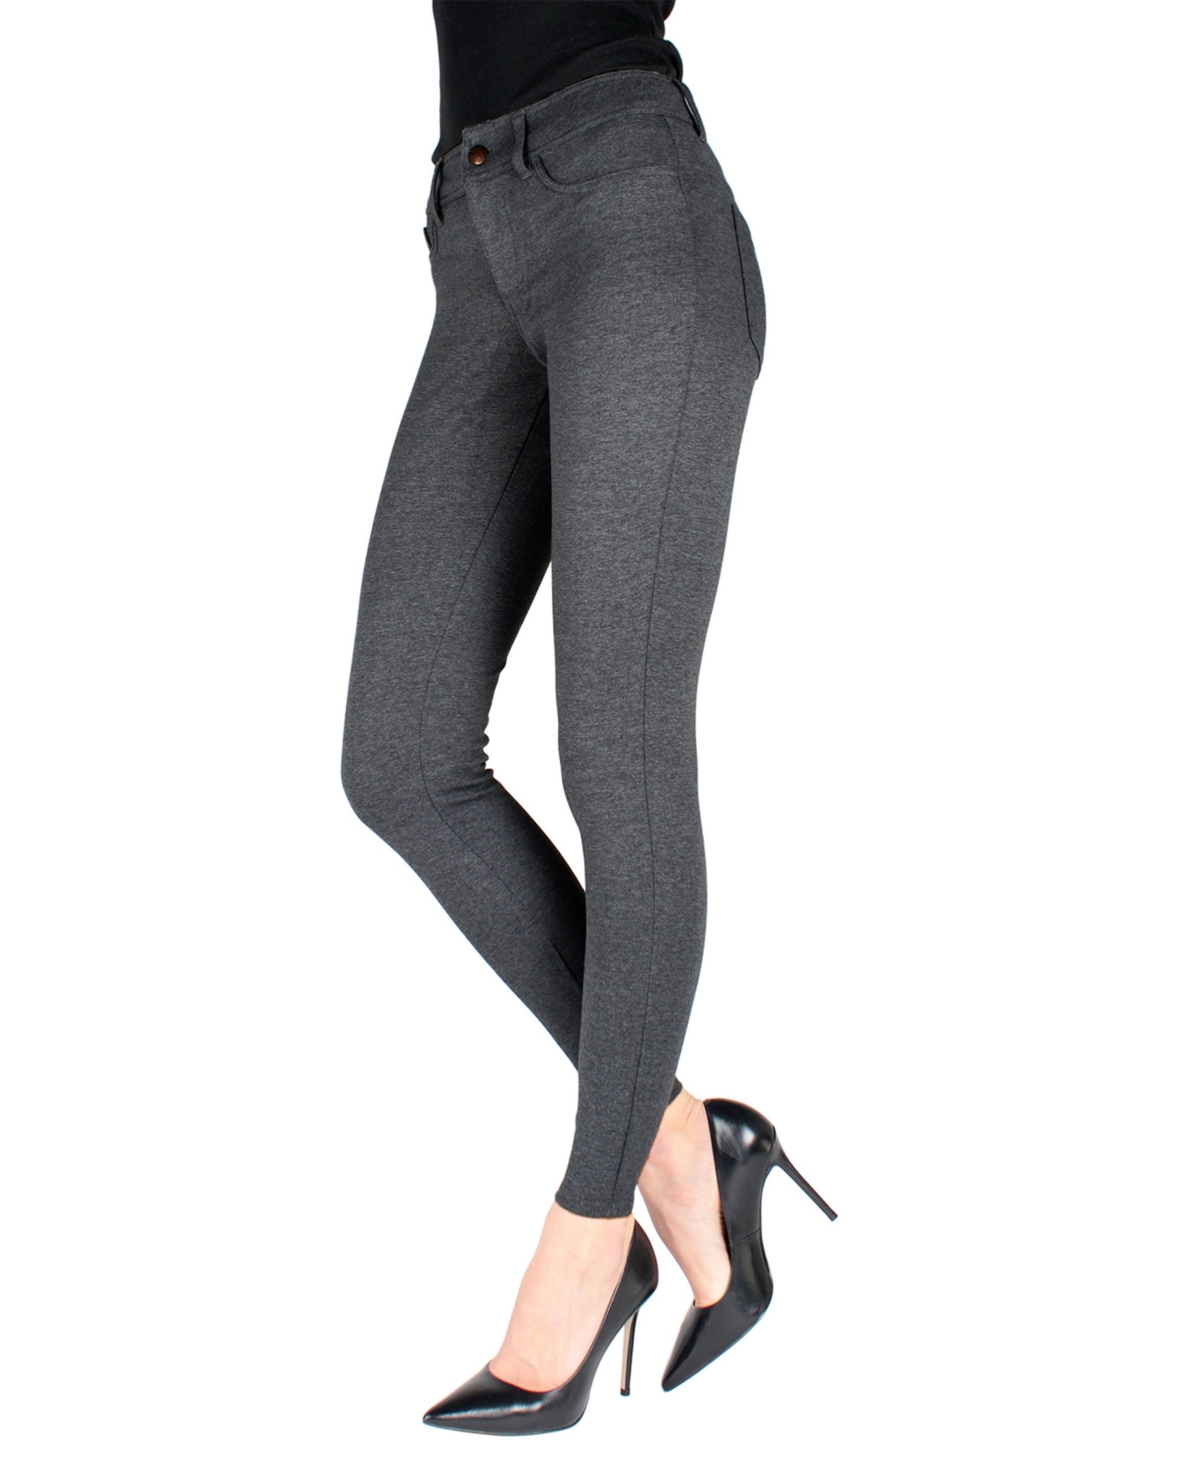 Women's Pants-Style Ponte Basic Pocket Leggings - Black